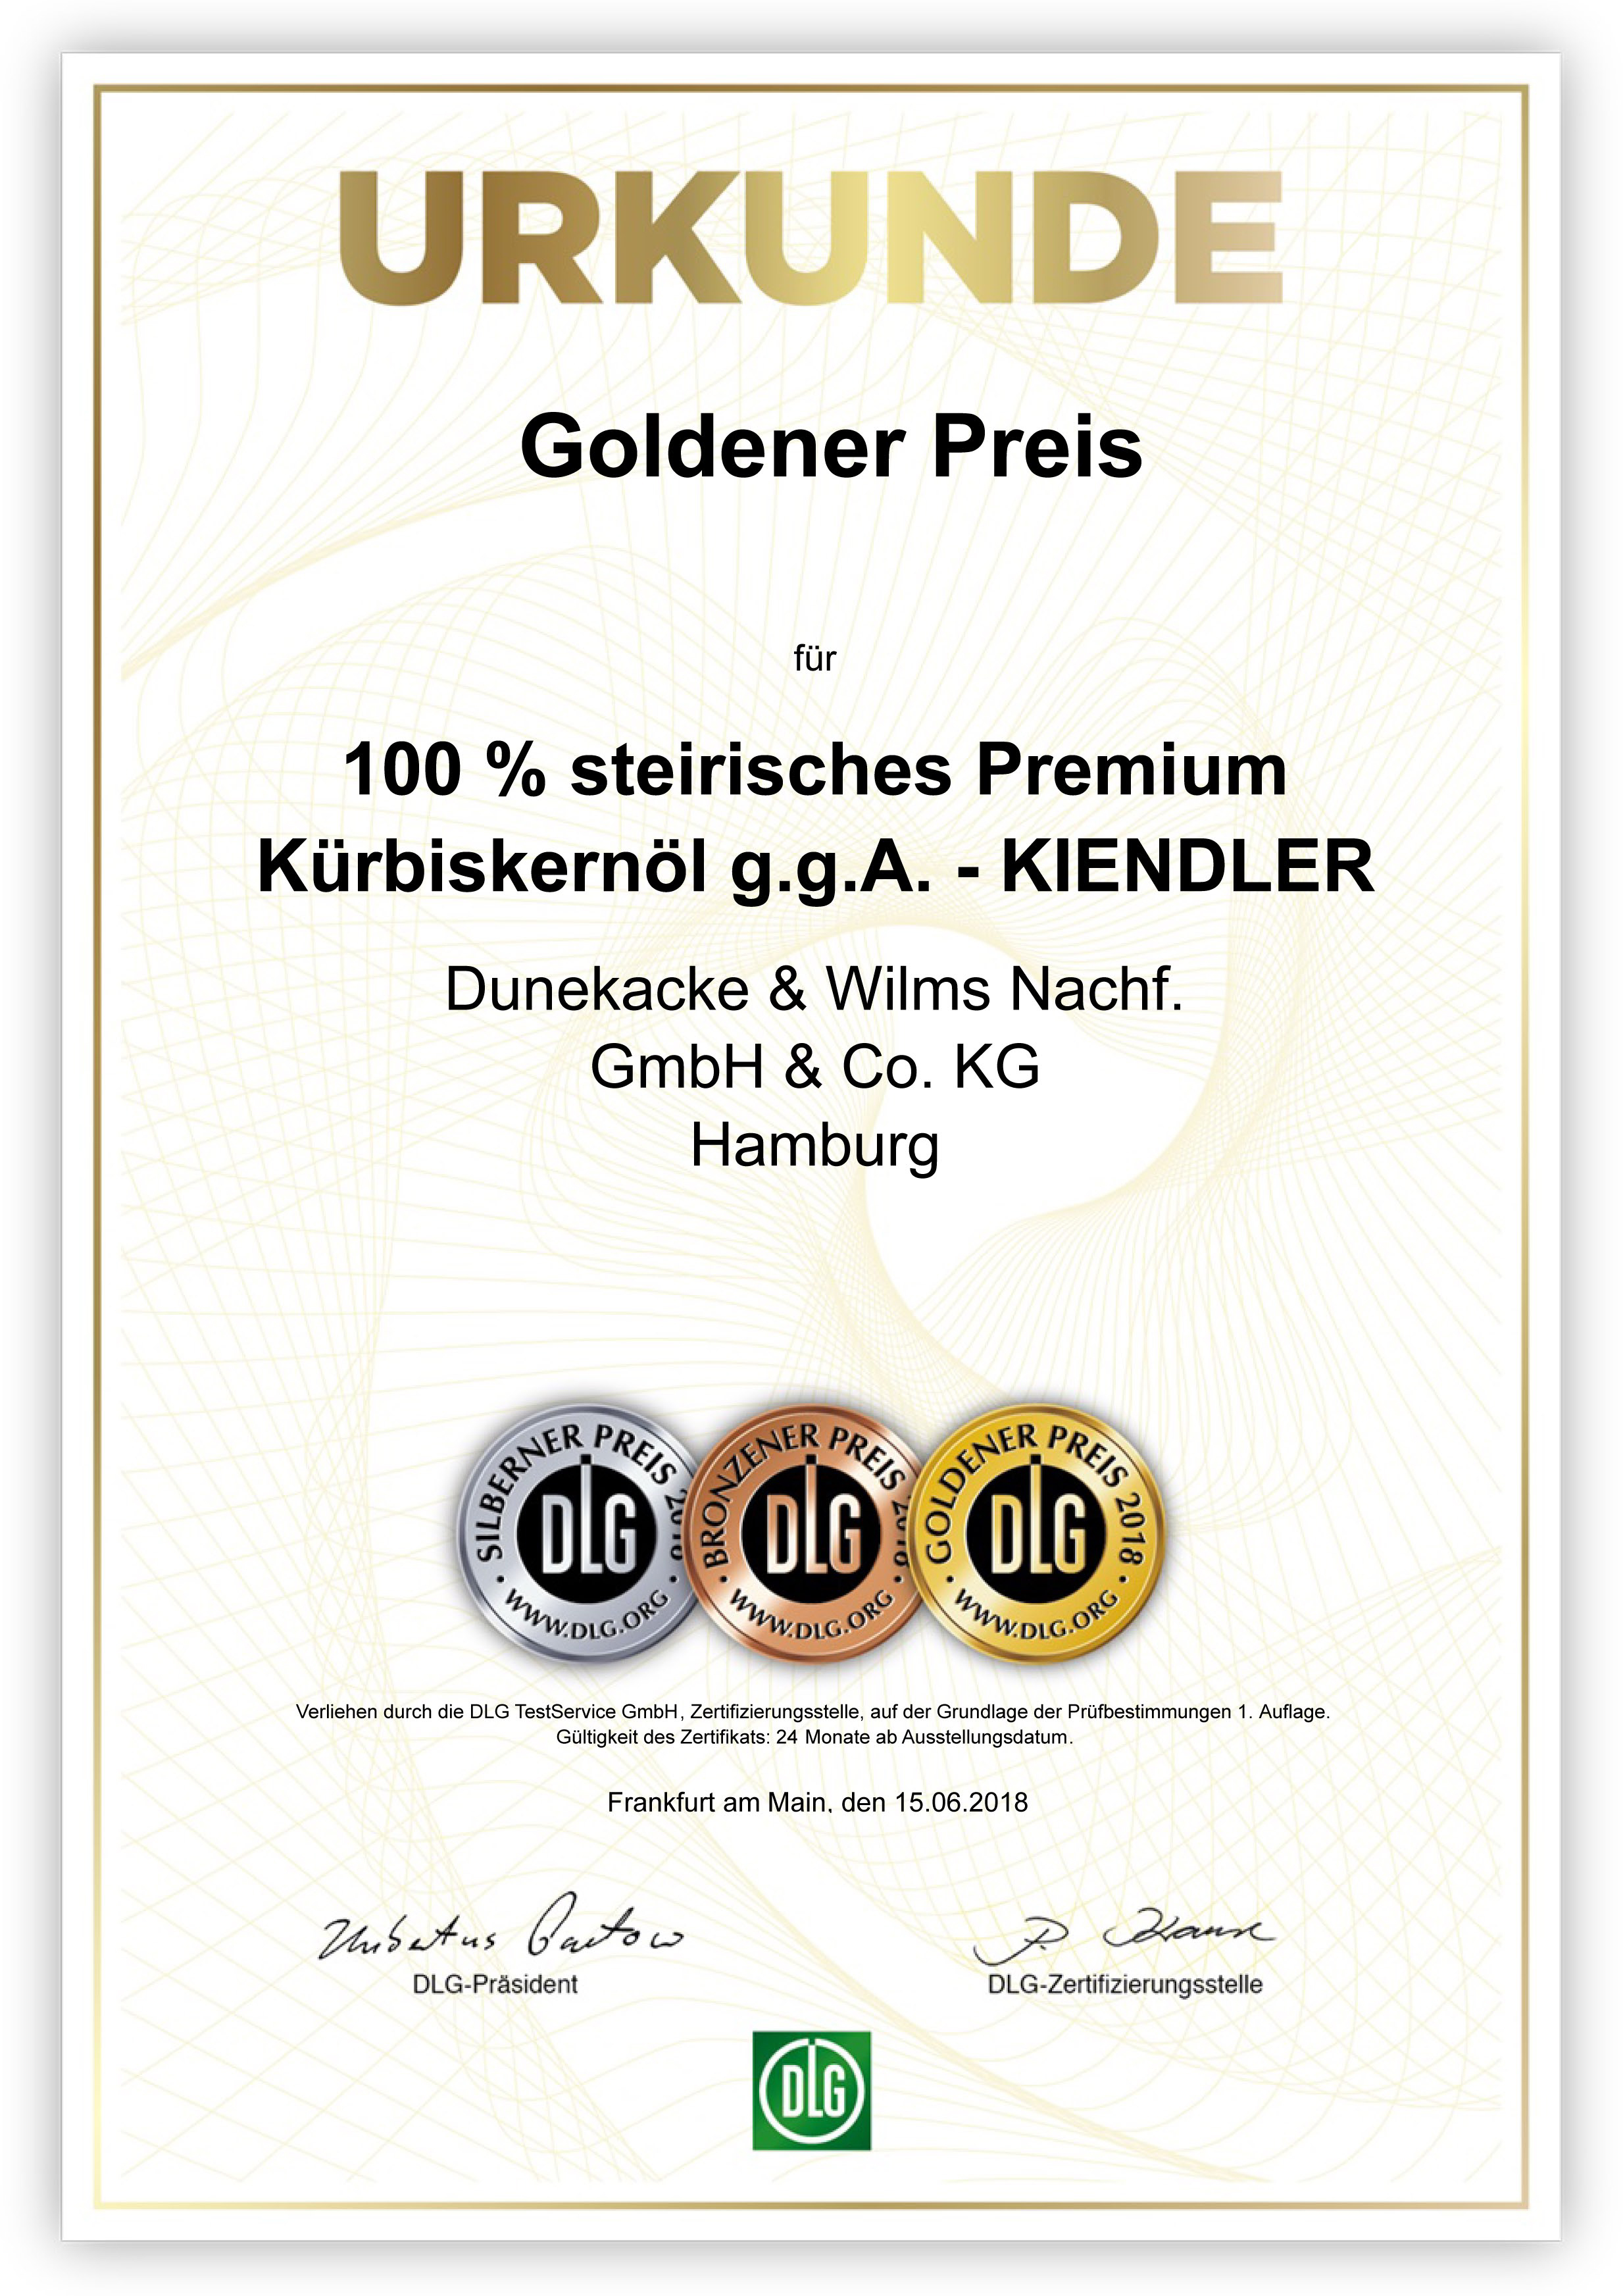 DLG-Pramierung GOLD Steirisches Kürbiskernöl 2018